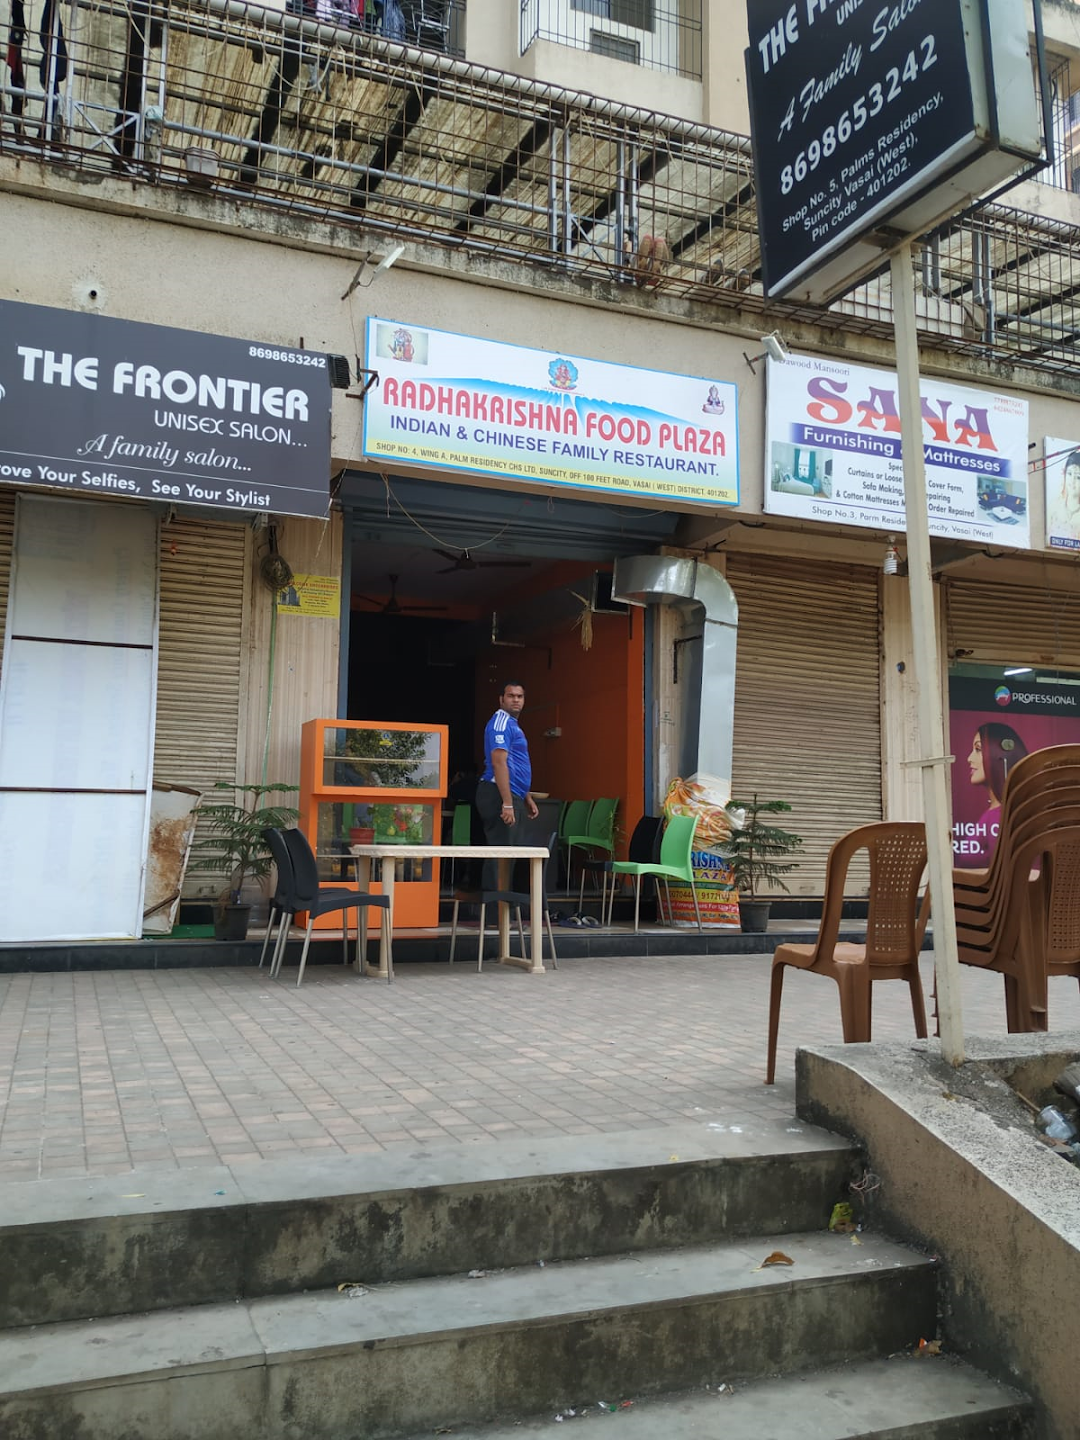 Radha Krishna Food Plaza